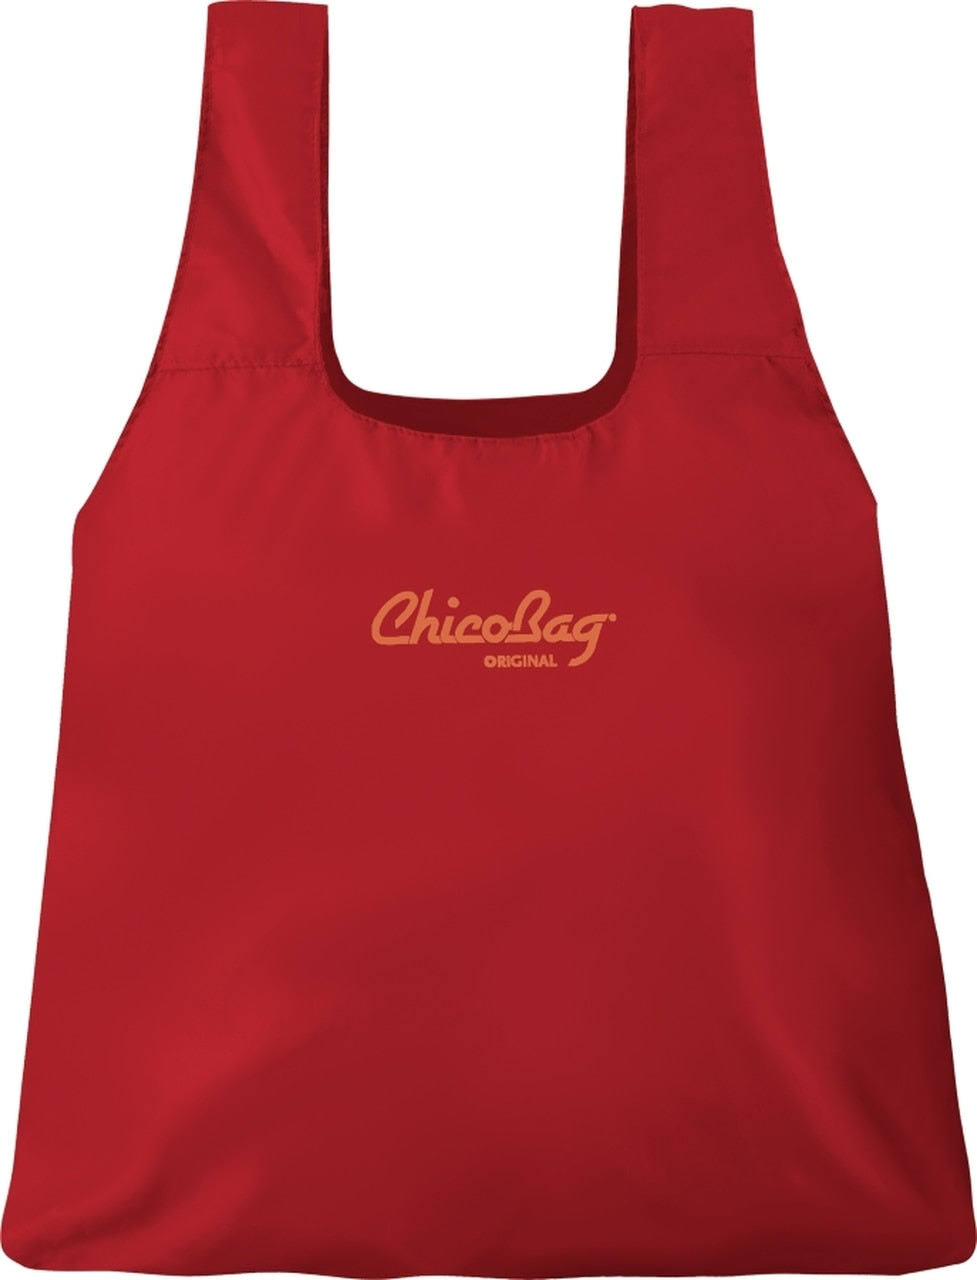 ChicoBag Original Reusable Shopping Bag - Red